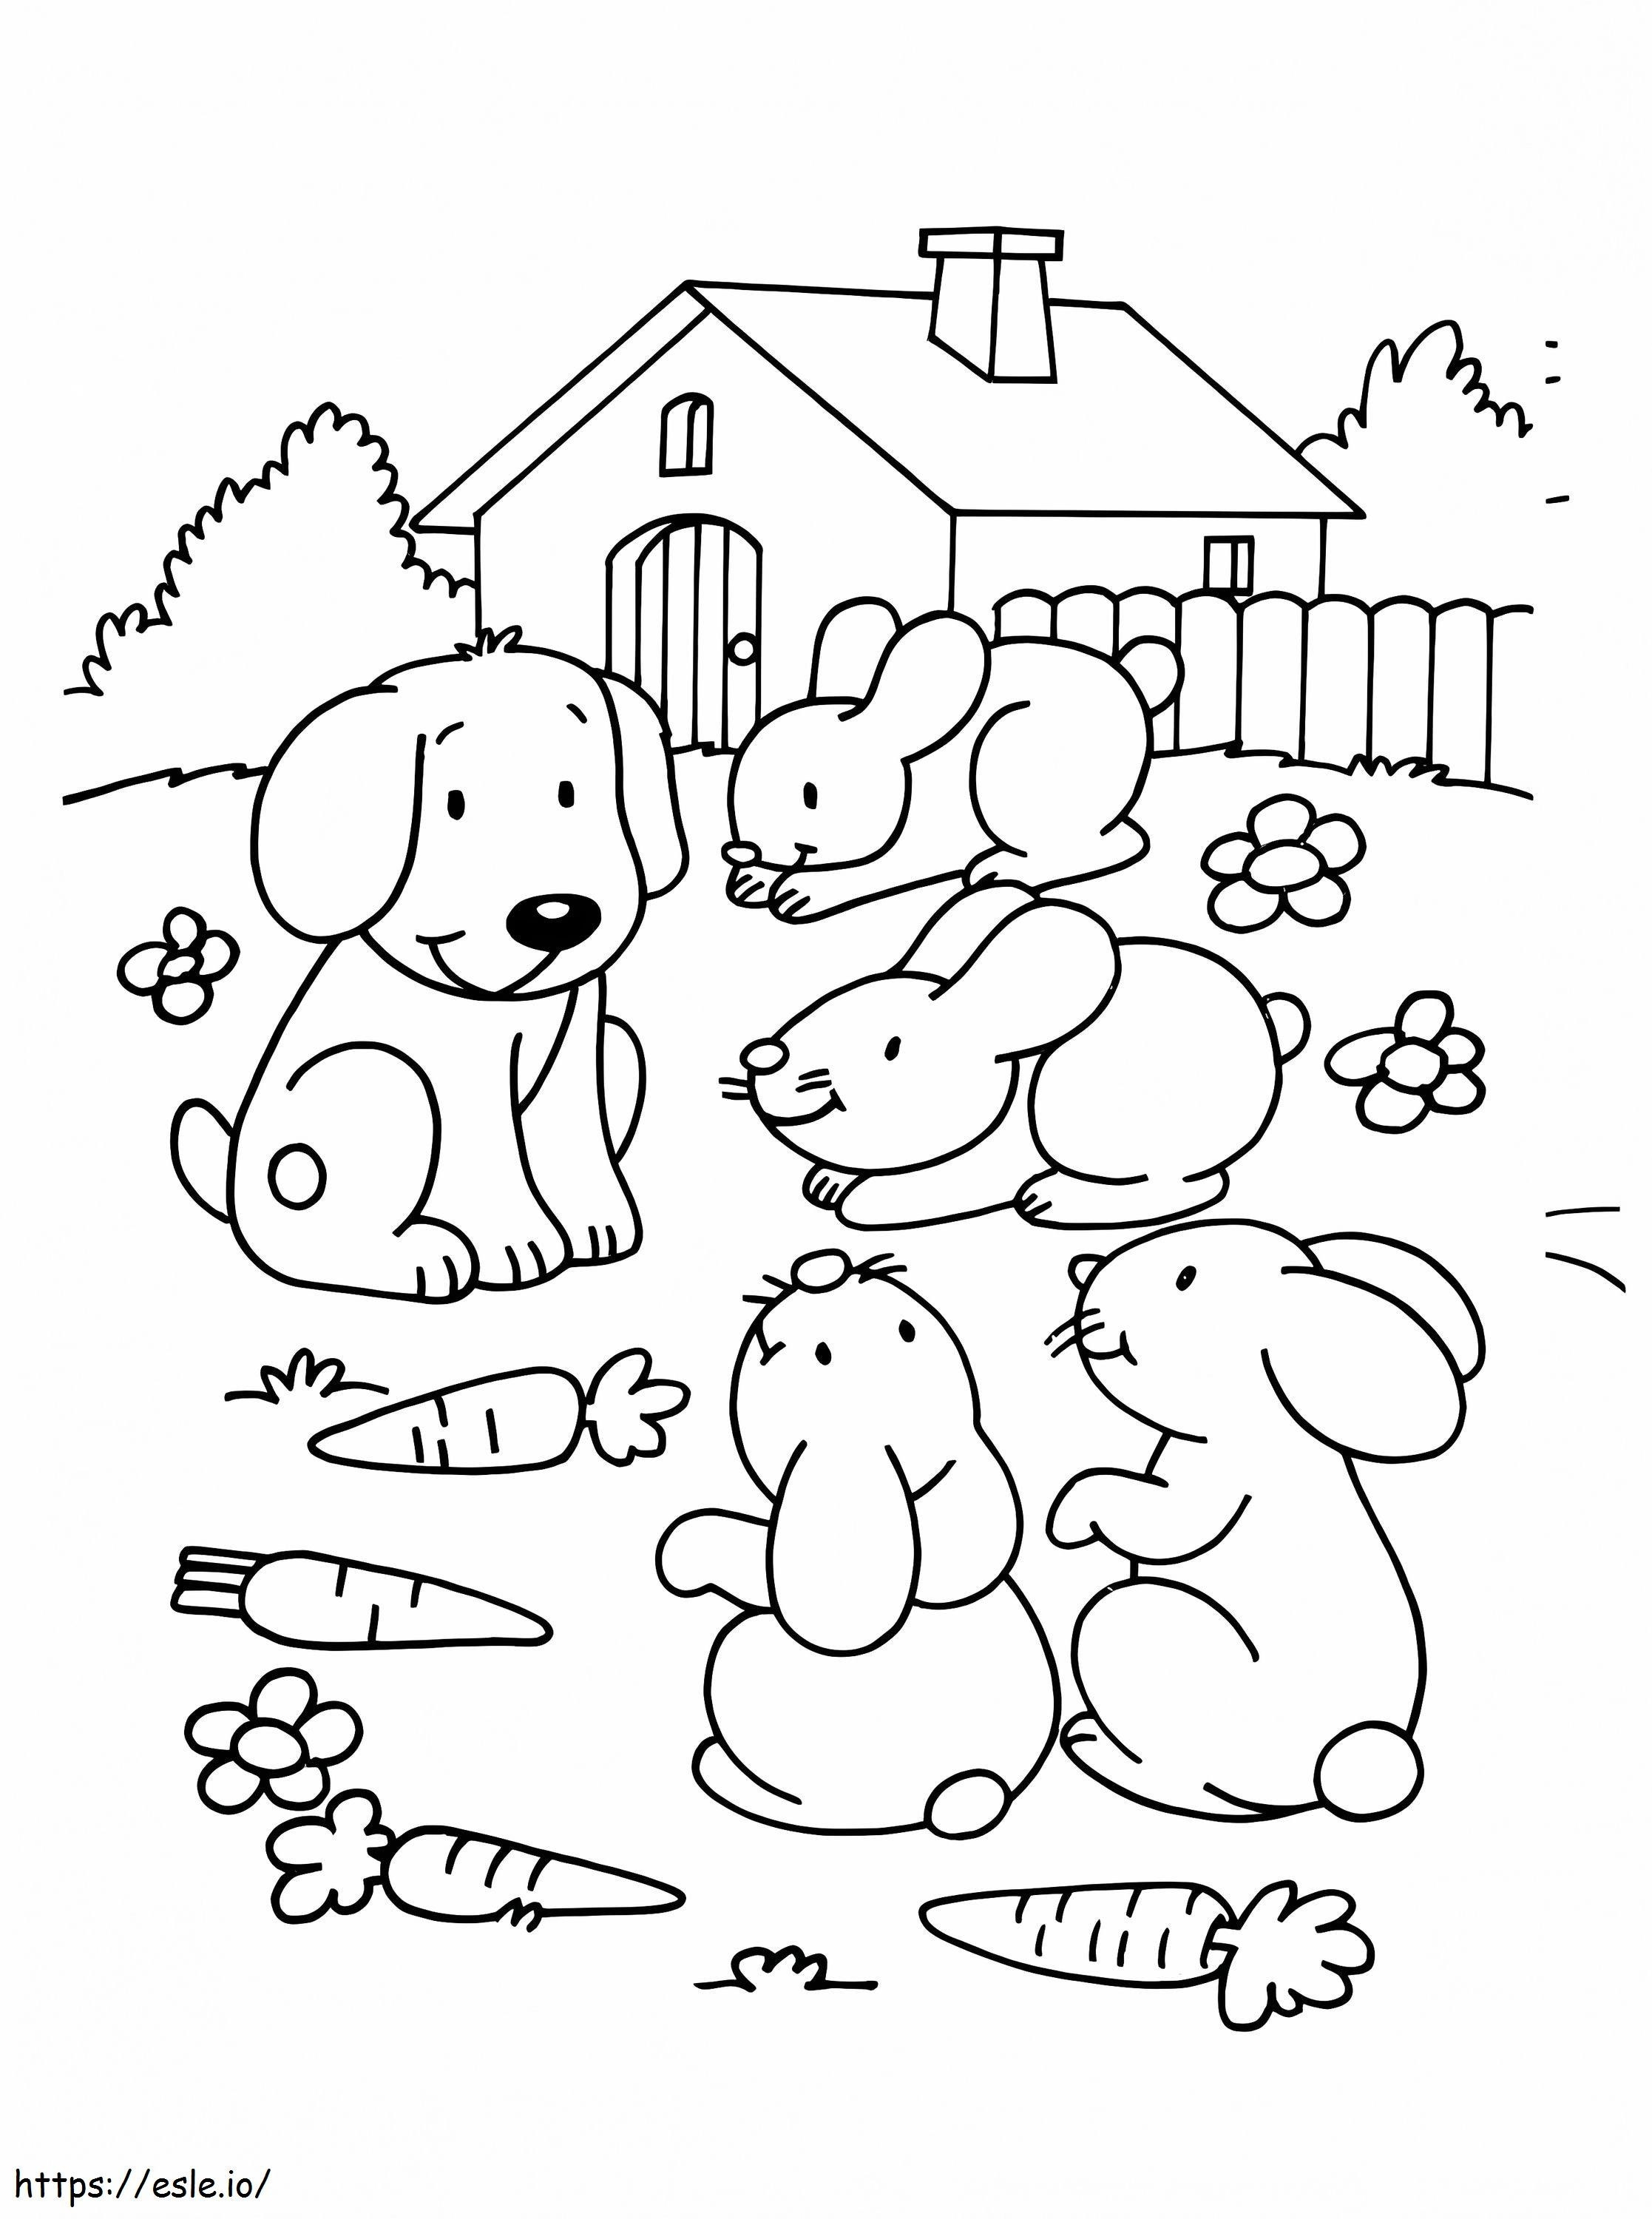 Cão de estimação e coelhos para colorir